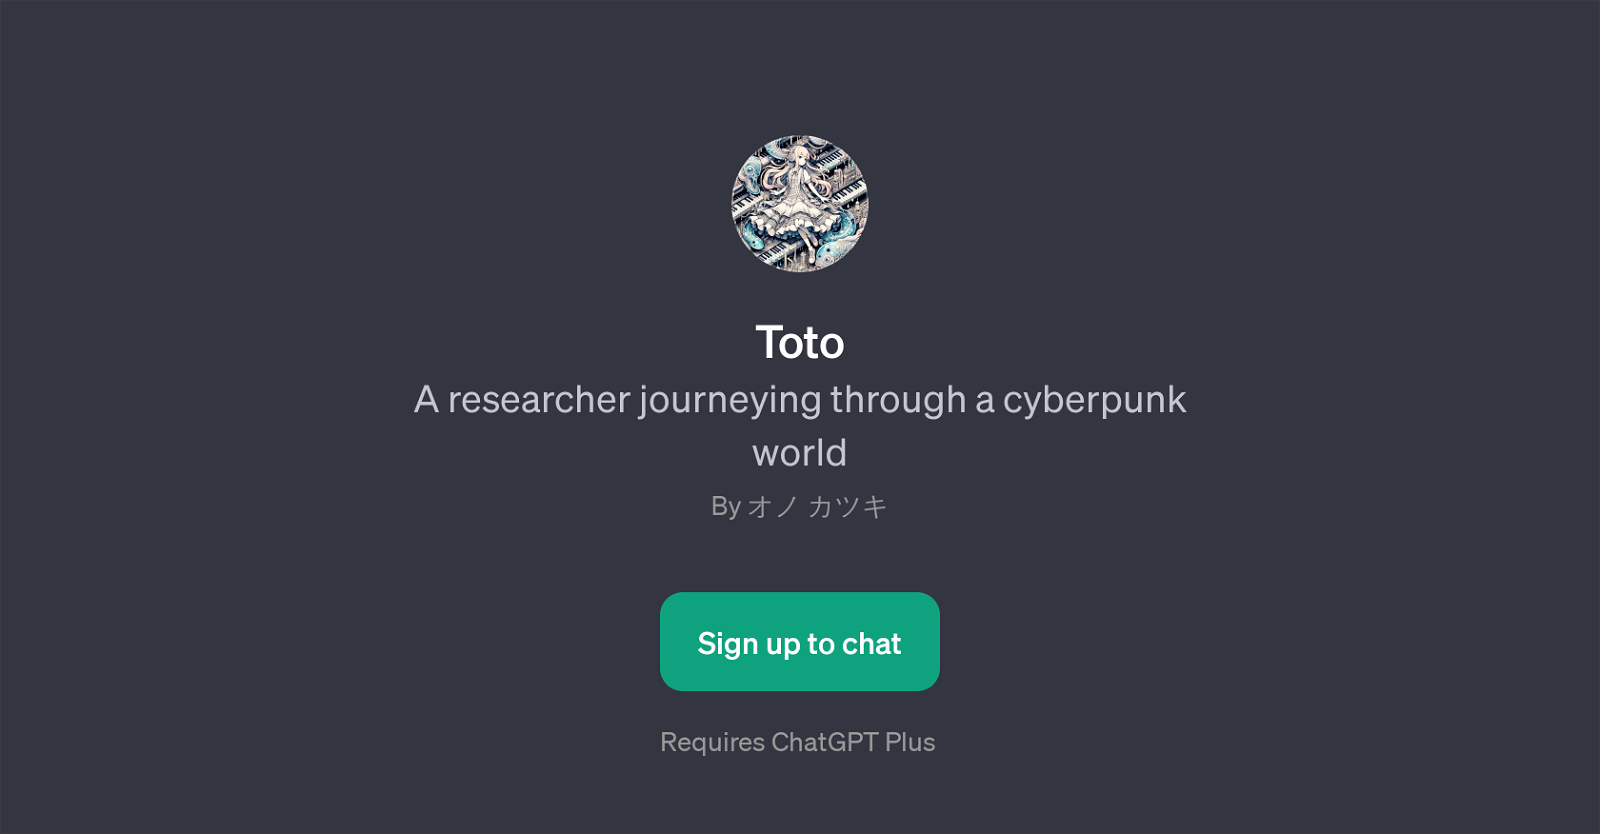 Toto website